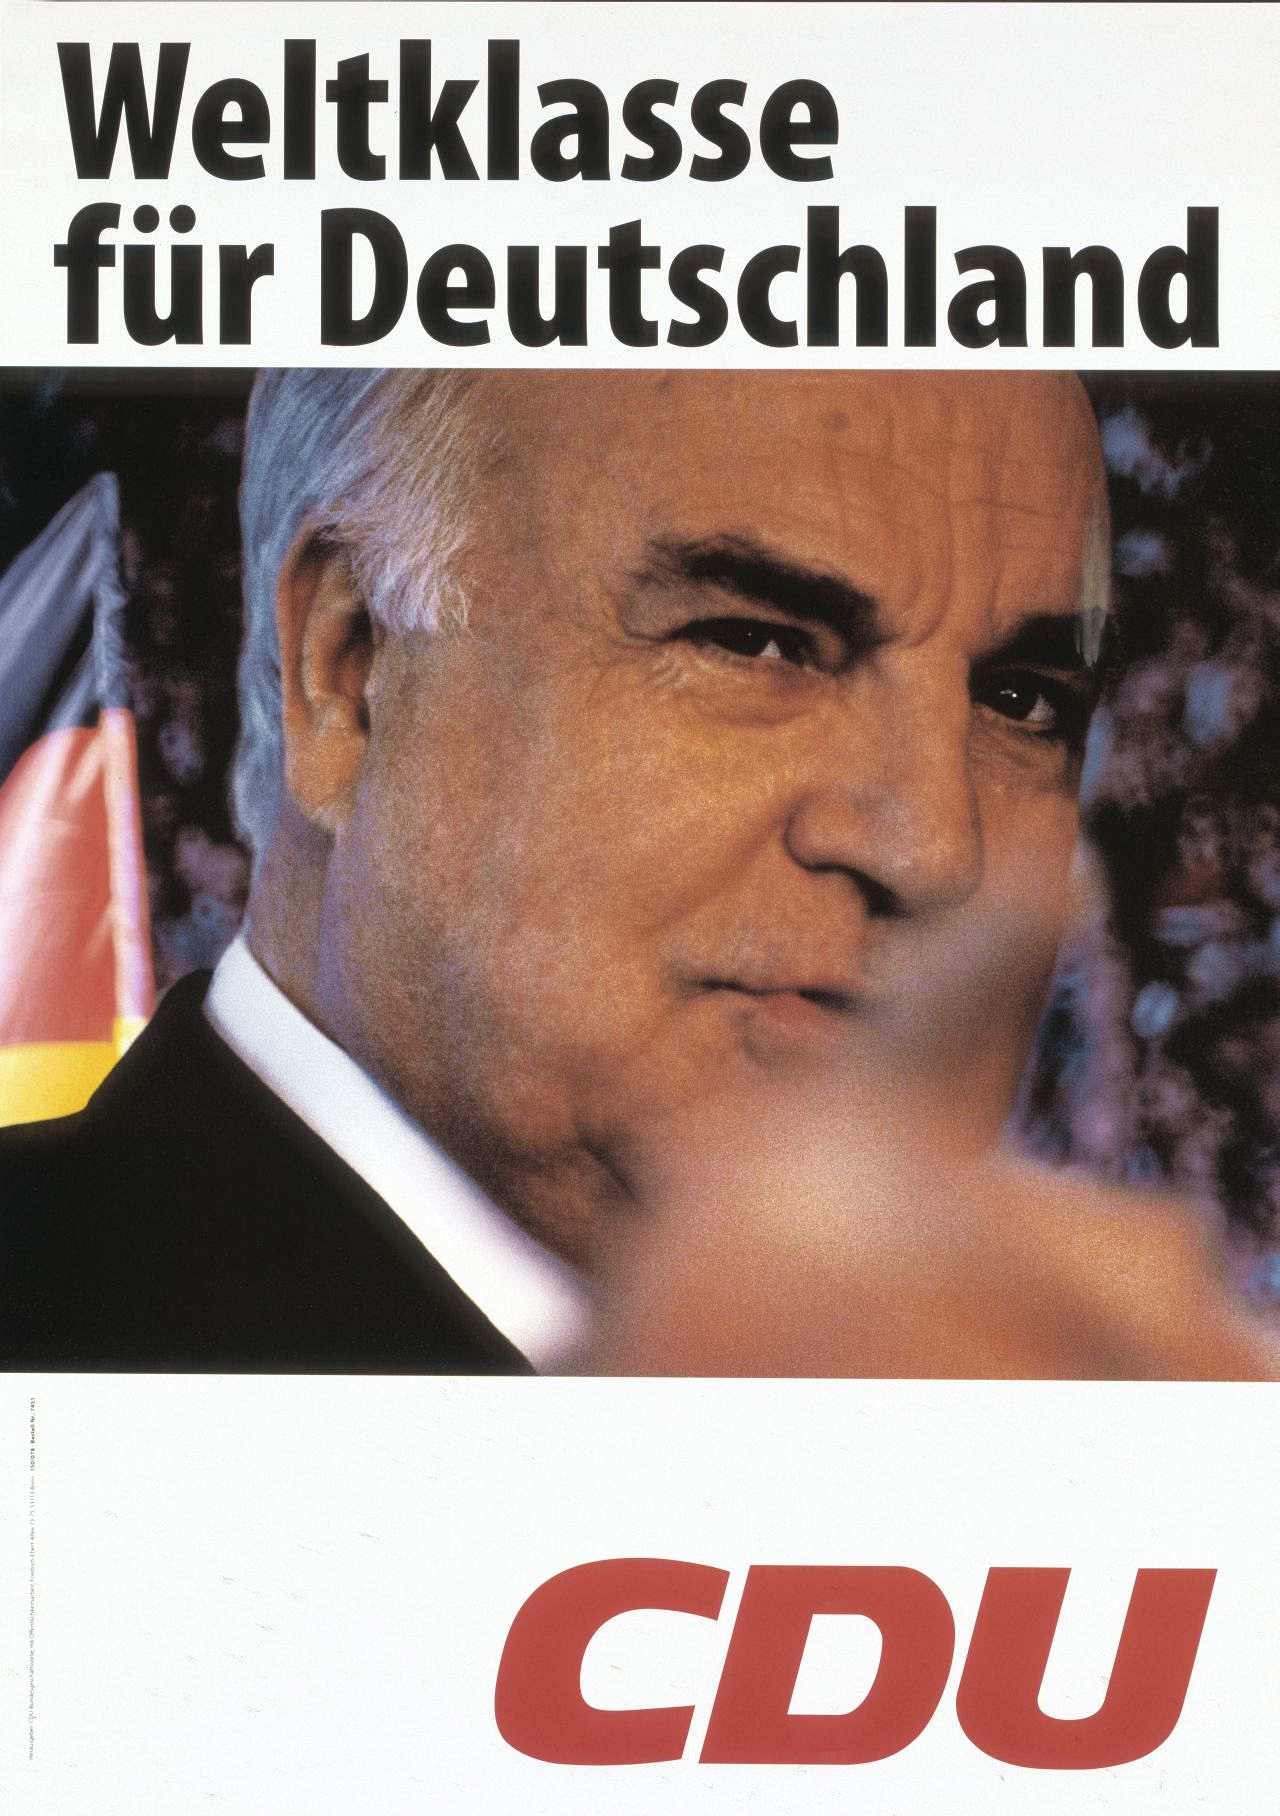 Motiv: Porträt Helmut Kohls mit erhobenem, verwischten Zeigefinger (Farbfoto); auf weißem Feld am oberen Rand: Weltklasse für Deutschland (schwarz); unten weißer Balken, darin: CDU (rot).